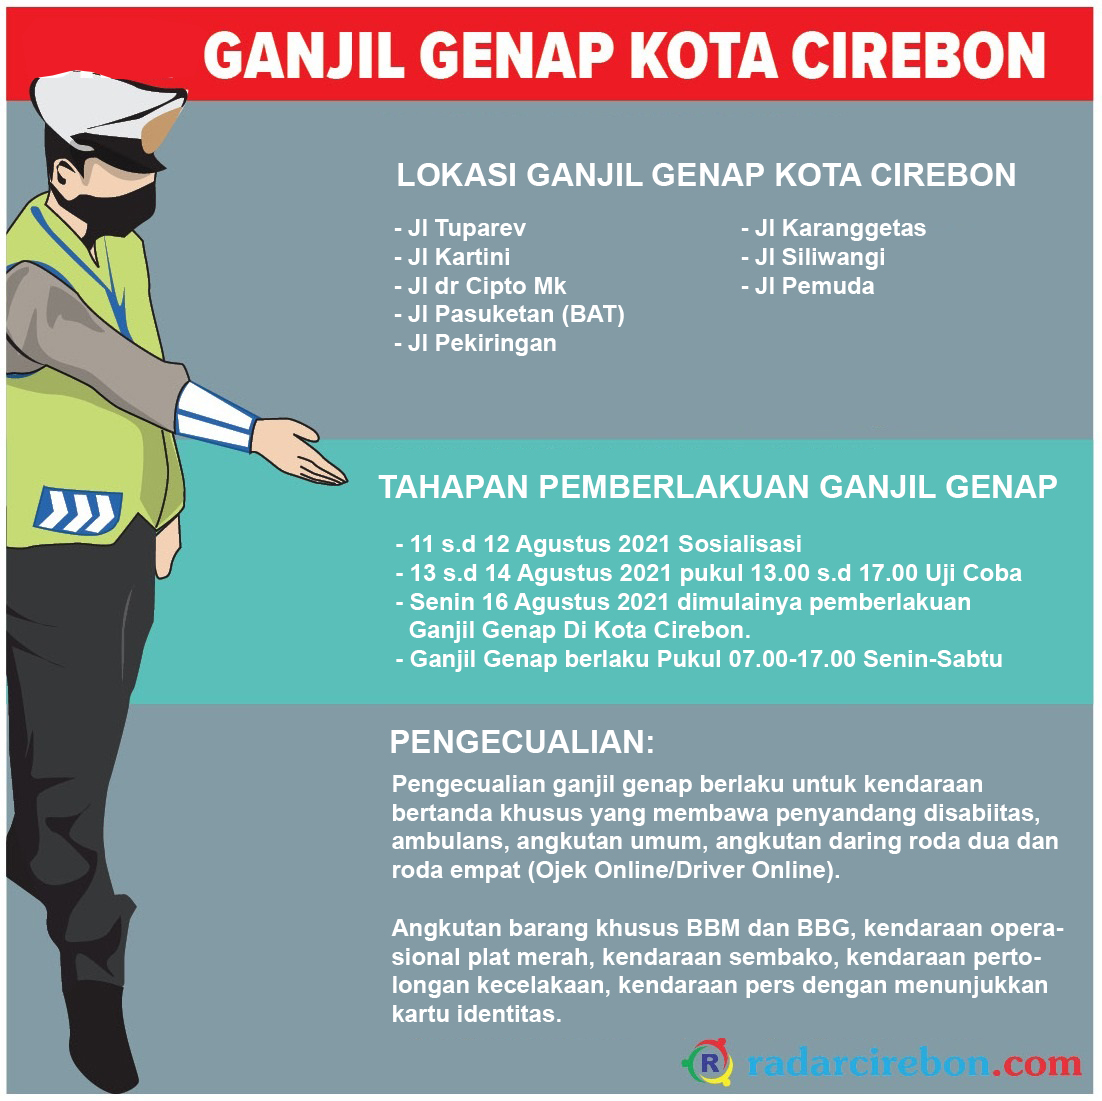 Ganjil Genap Kota Cirebon, Wajib Perhatikan Ini!